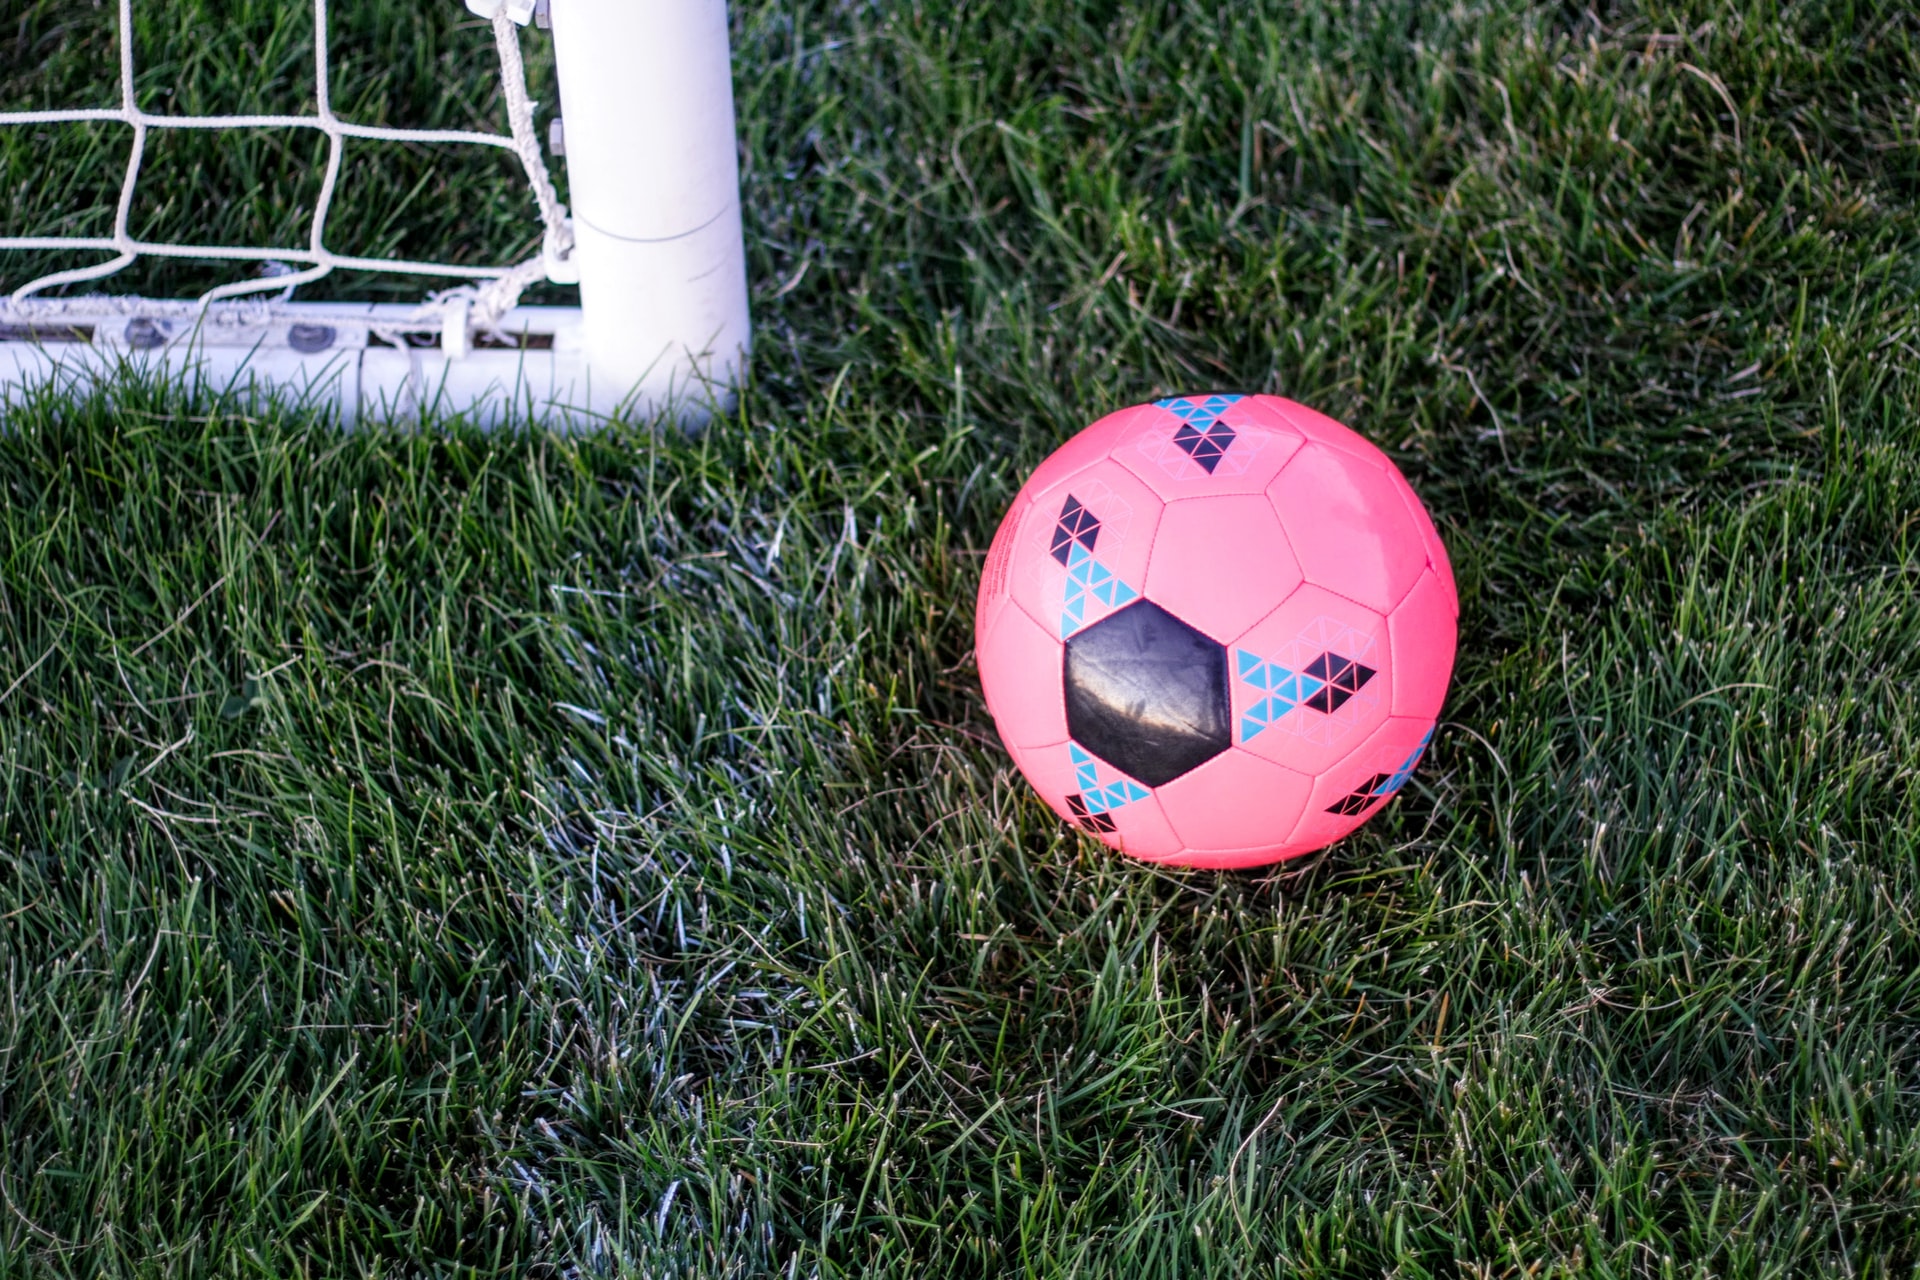 Jakie są zalety posiadania małych bramek do piłki nożnej?